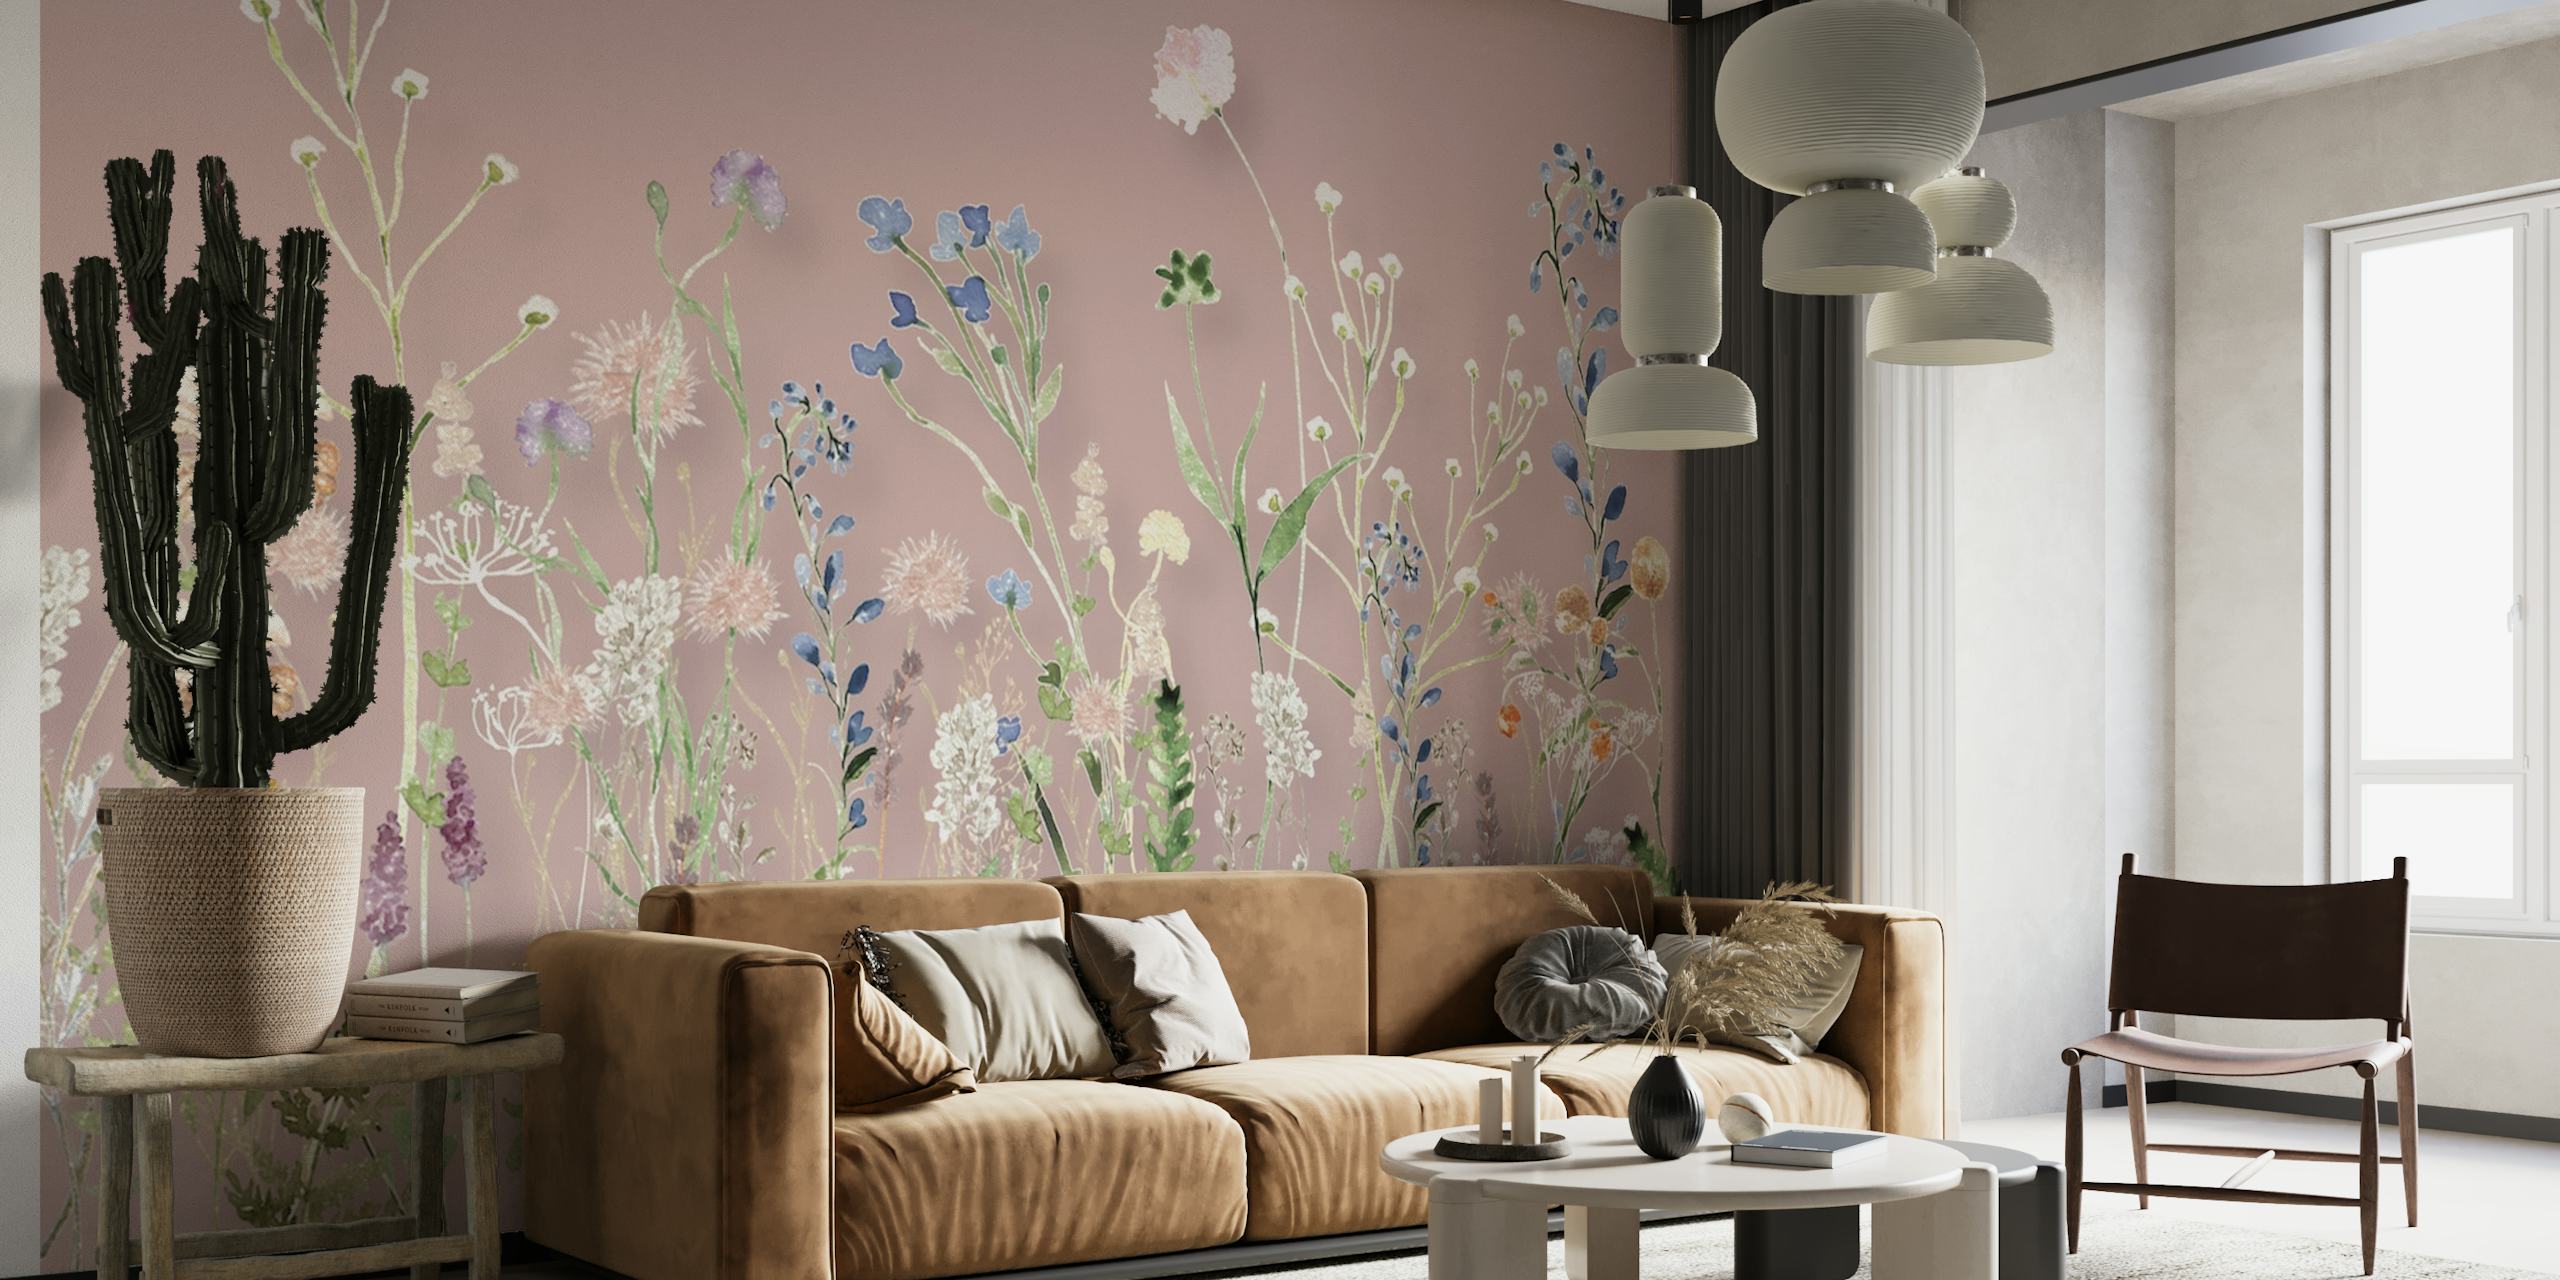 Un relajante diseño de pradera de flores silvestres con un fondo rosa rubor para un mural de pared.